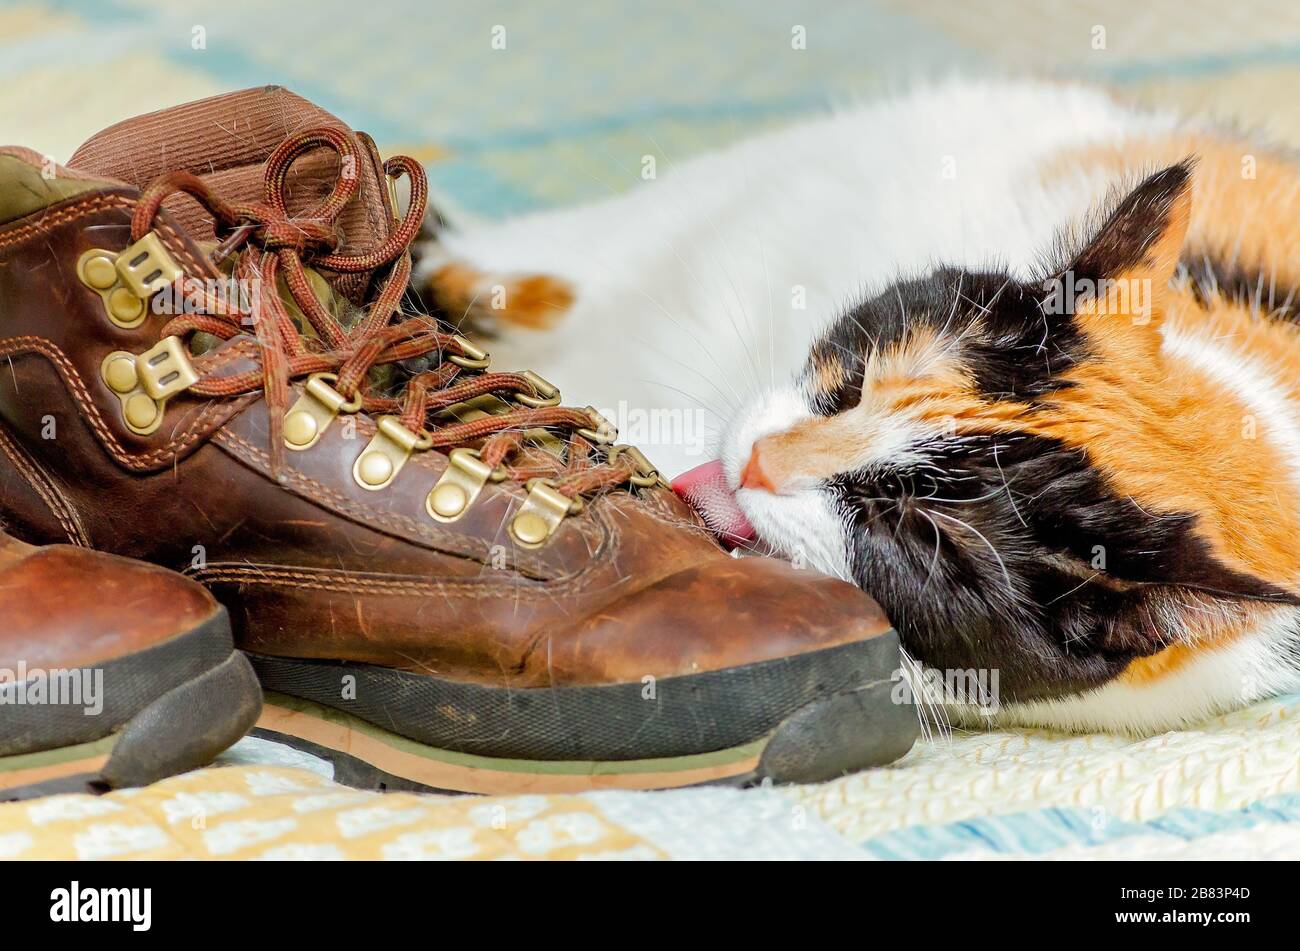 La zucca, un gatto calico, lecca le scarpe del suo proprietario, 29 aprile 2017. I gatti sono spesso attratti dalle scarpe perché conservano l'odore del proprietario. Foto Stock